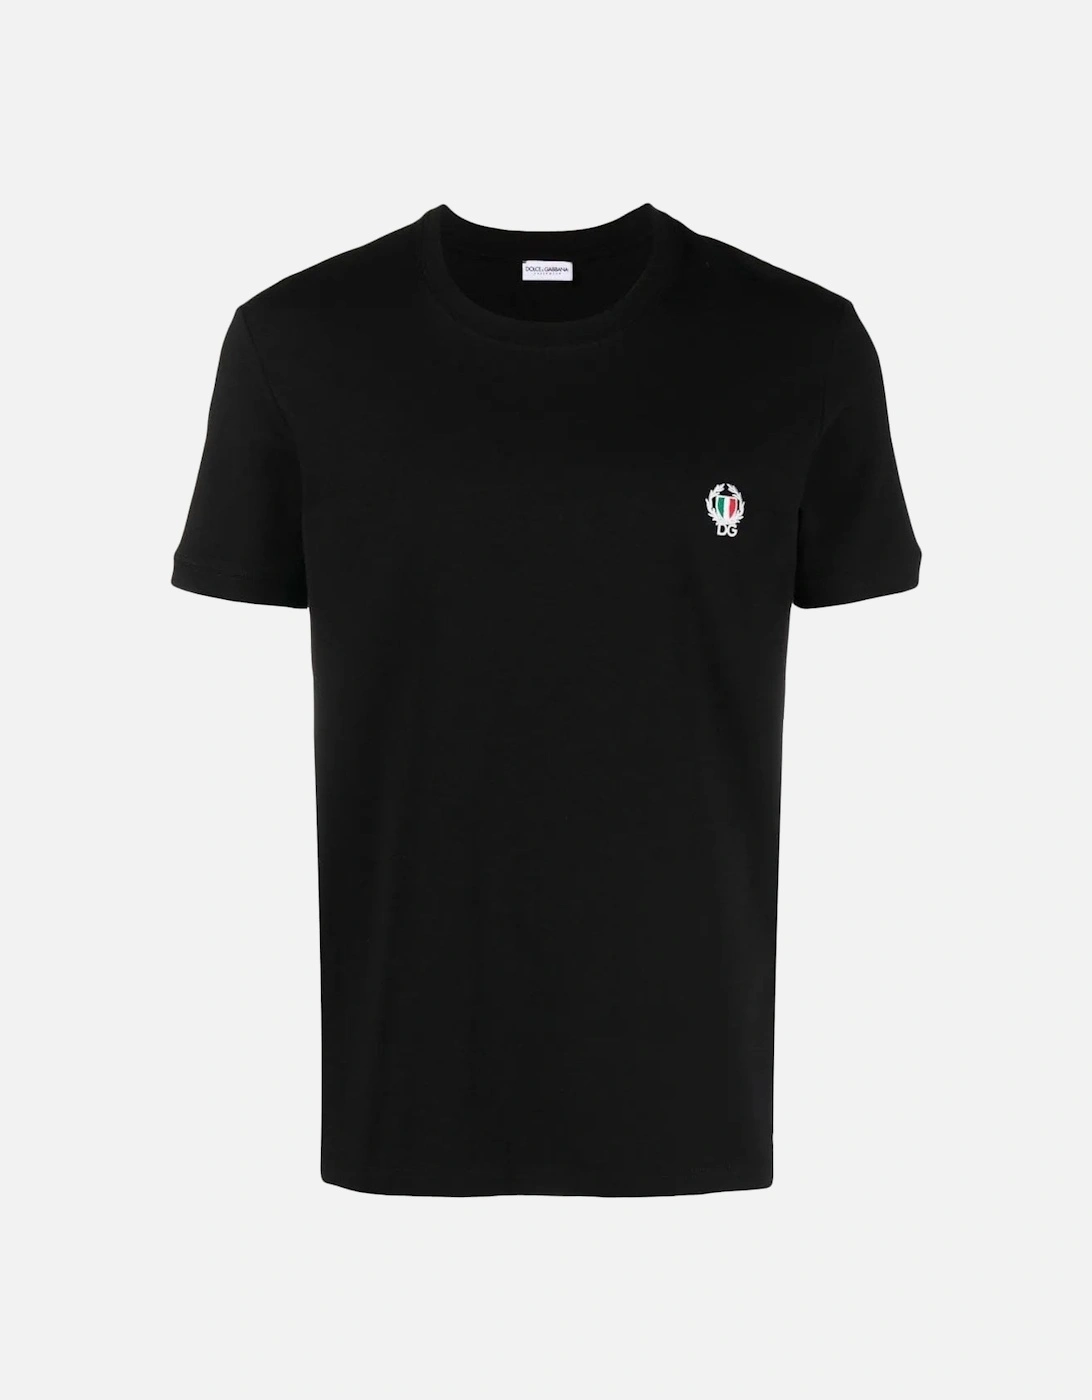 DG Crest T-shirt Black, 4 of 3